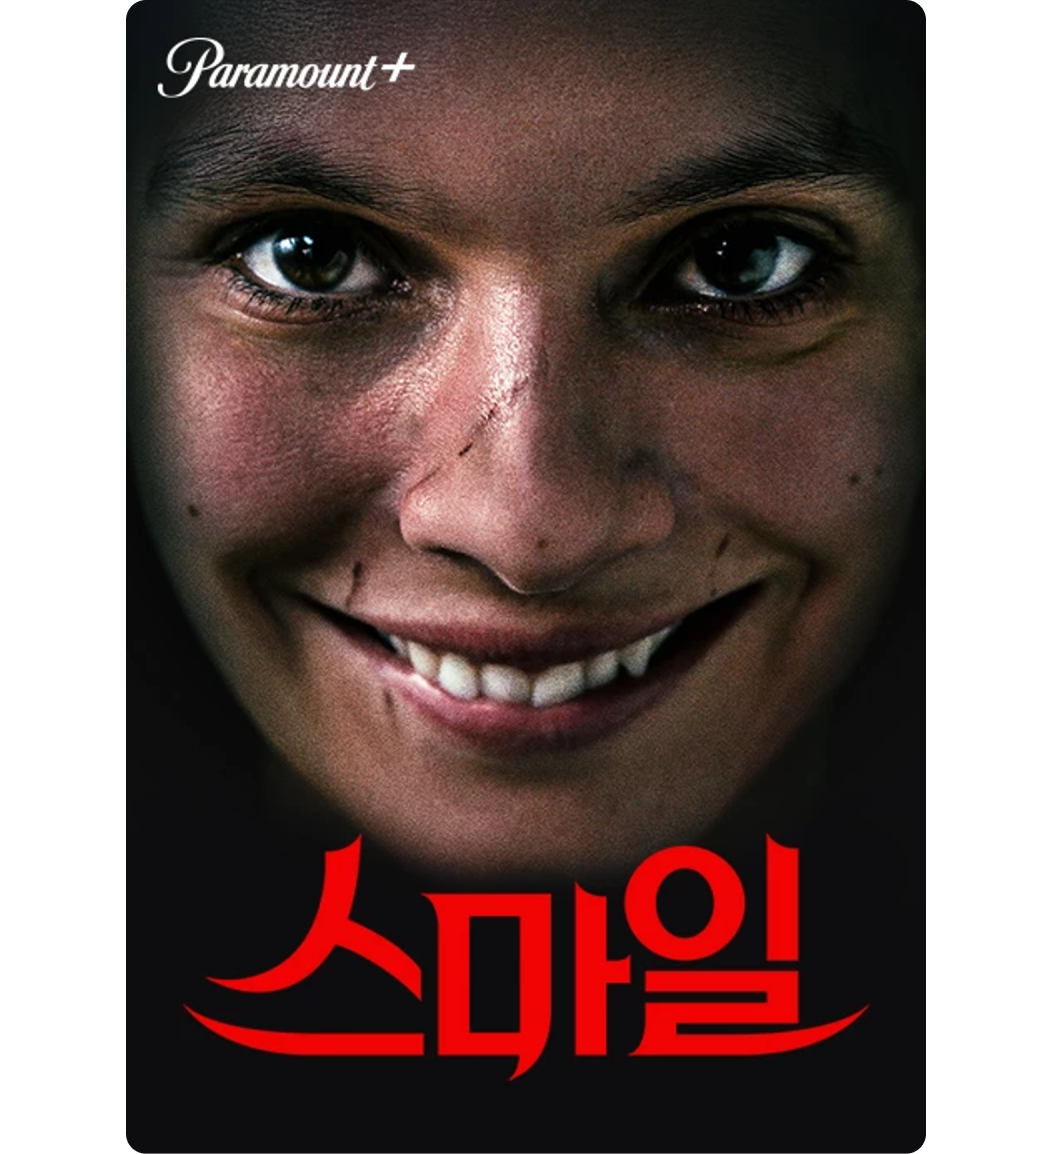 공포/스릴러 영화,드라마 추천 6가지 (ft. 혼자 보지마세요) | LG U+